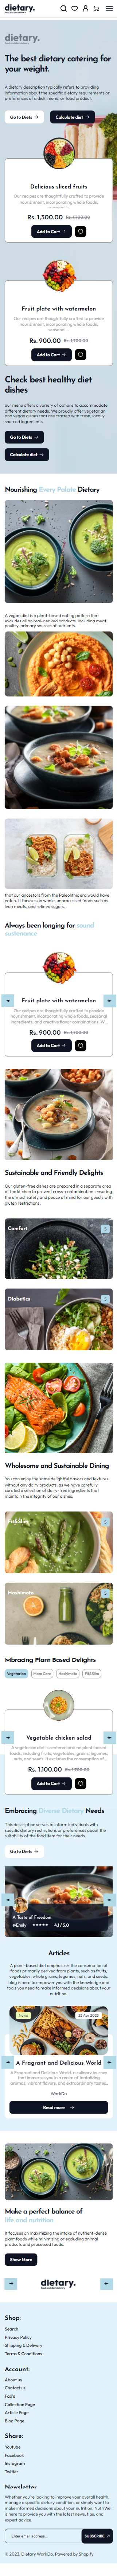 Dietary Shopify Theme - WorkDo